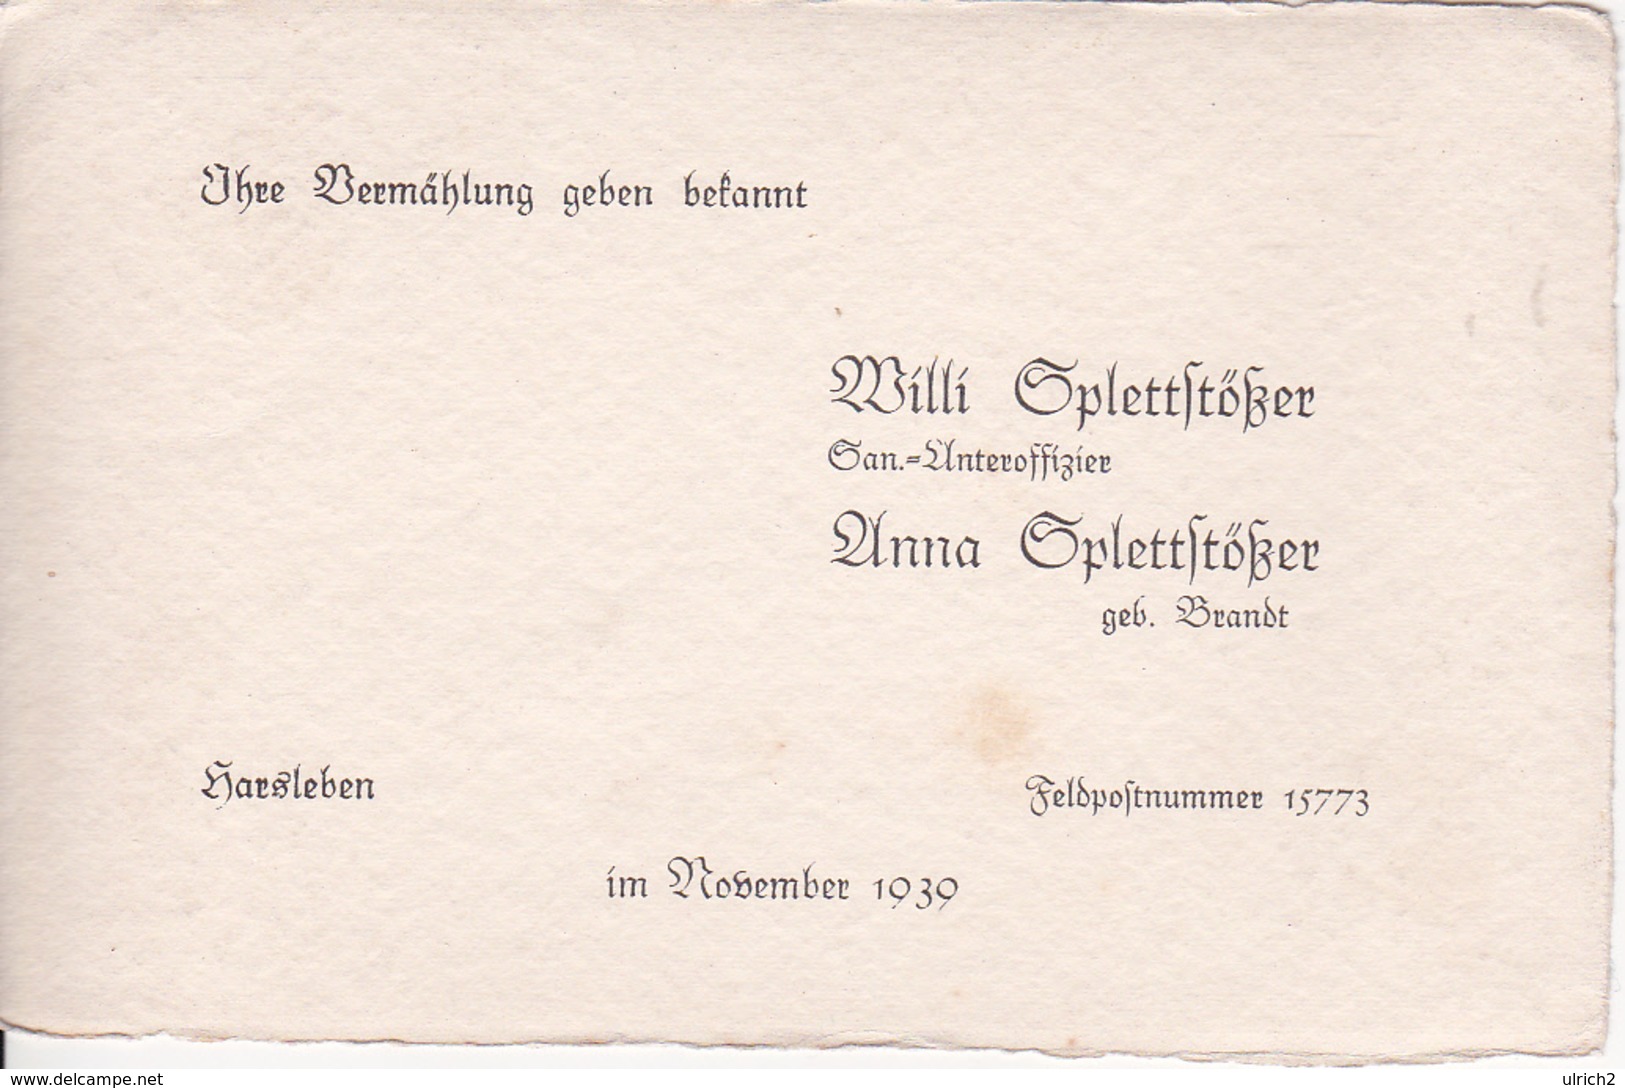 Vermählungs-Anzeige - Willi Und Anna Splettstößer - Harsleben / Feldpostnummer 15773 - November 1939 (26062) - Boda